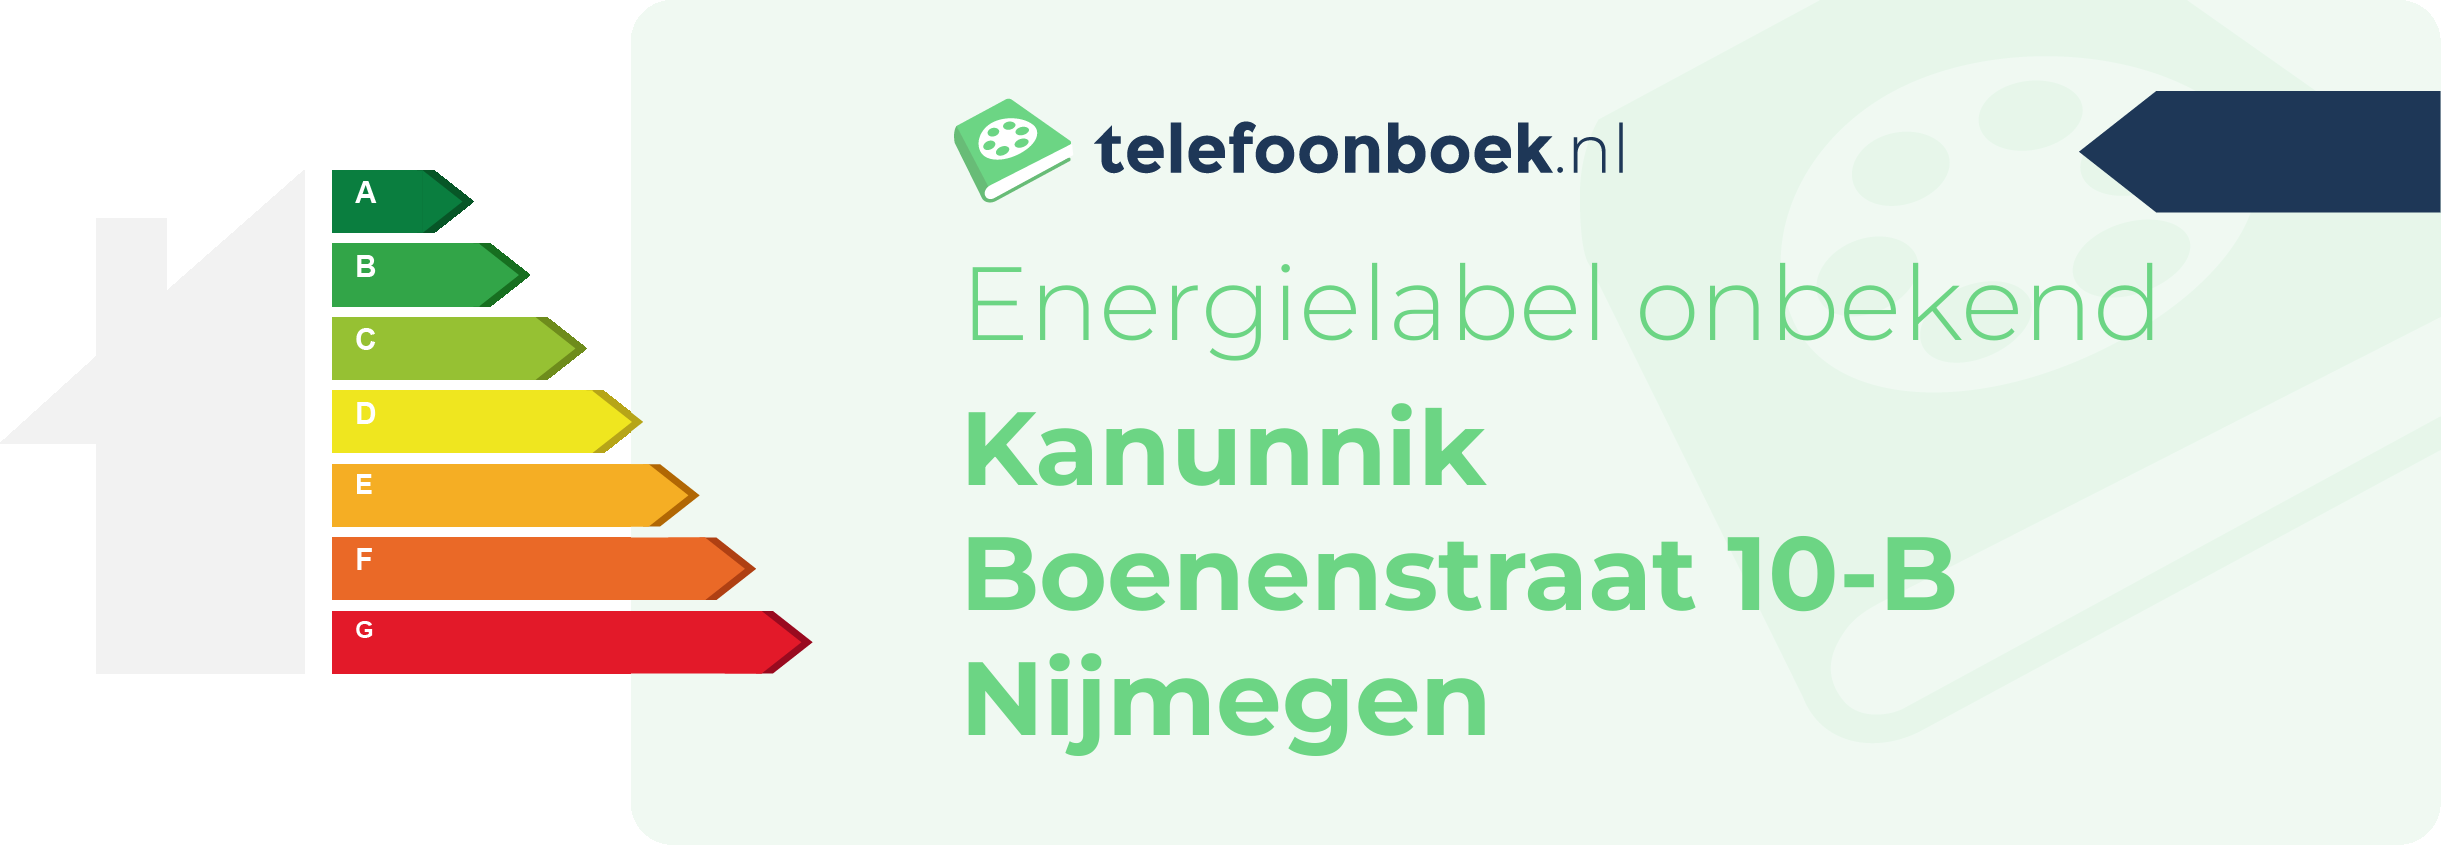 Energielabel Kanunnik Boenenstraat 10-B Nijmegen